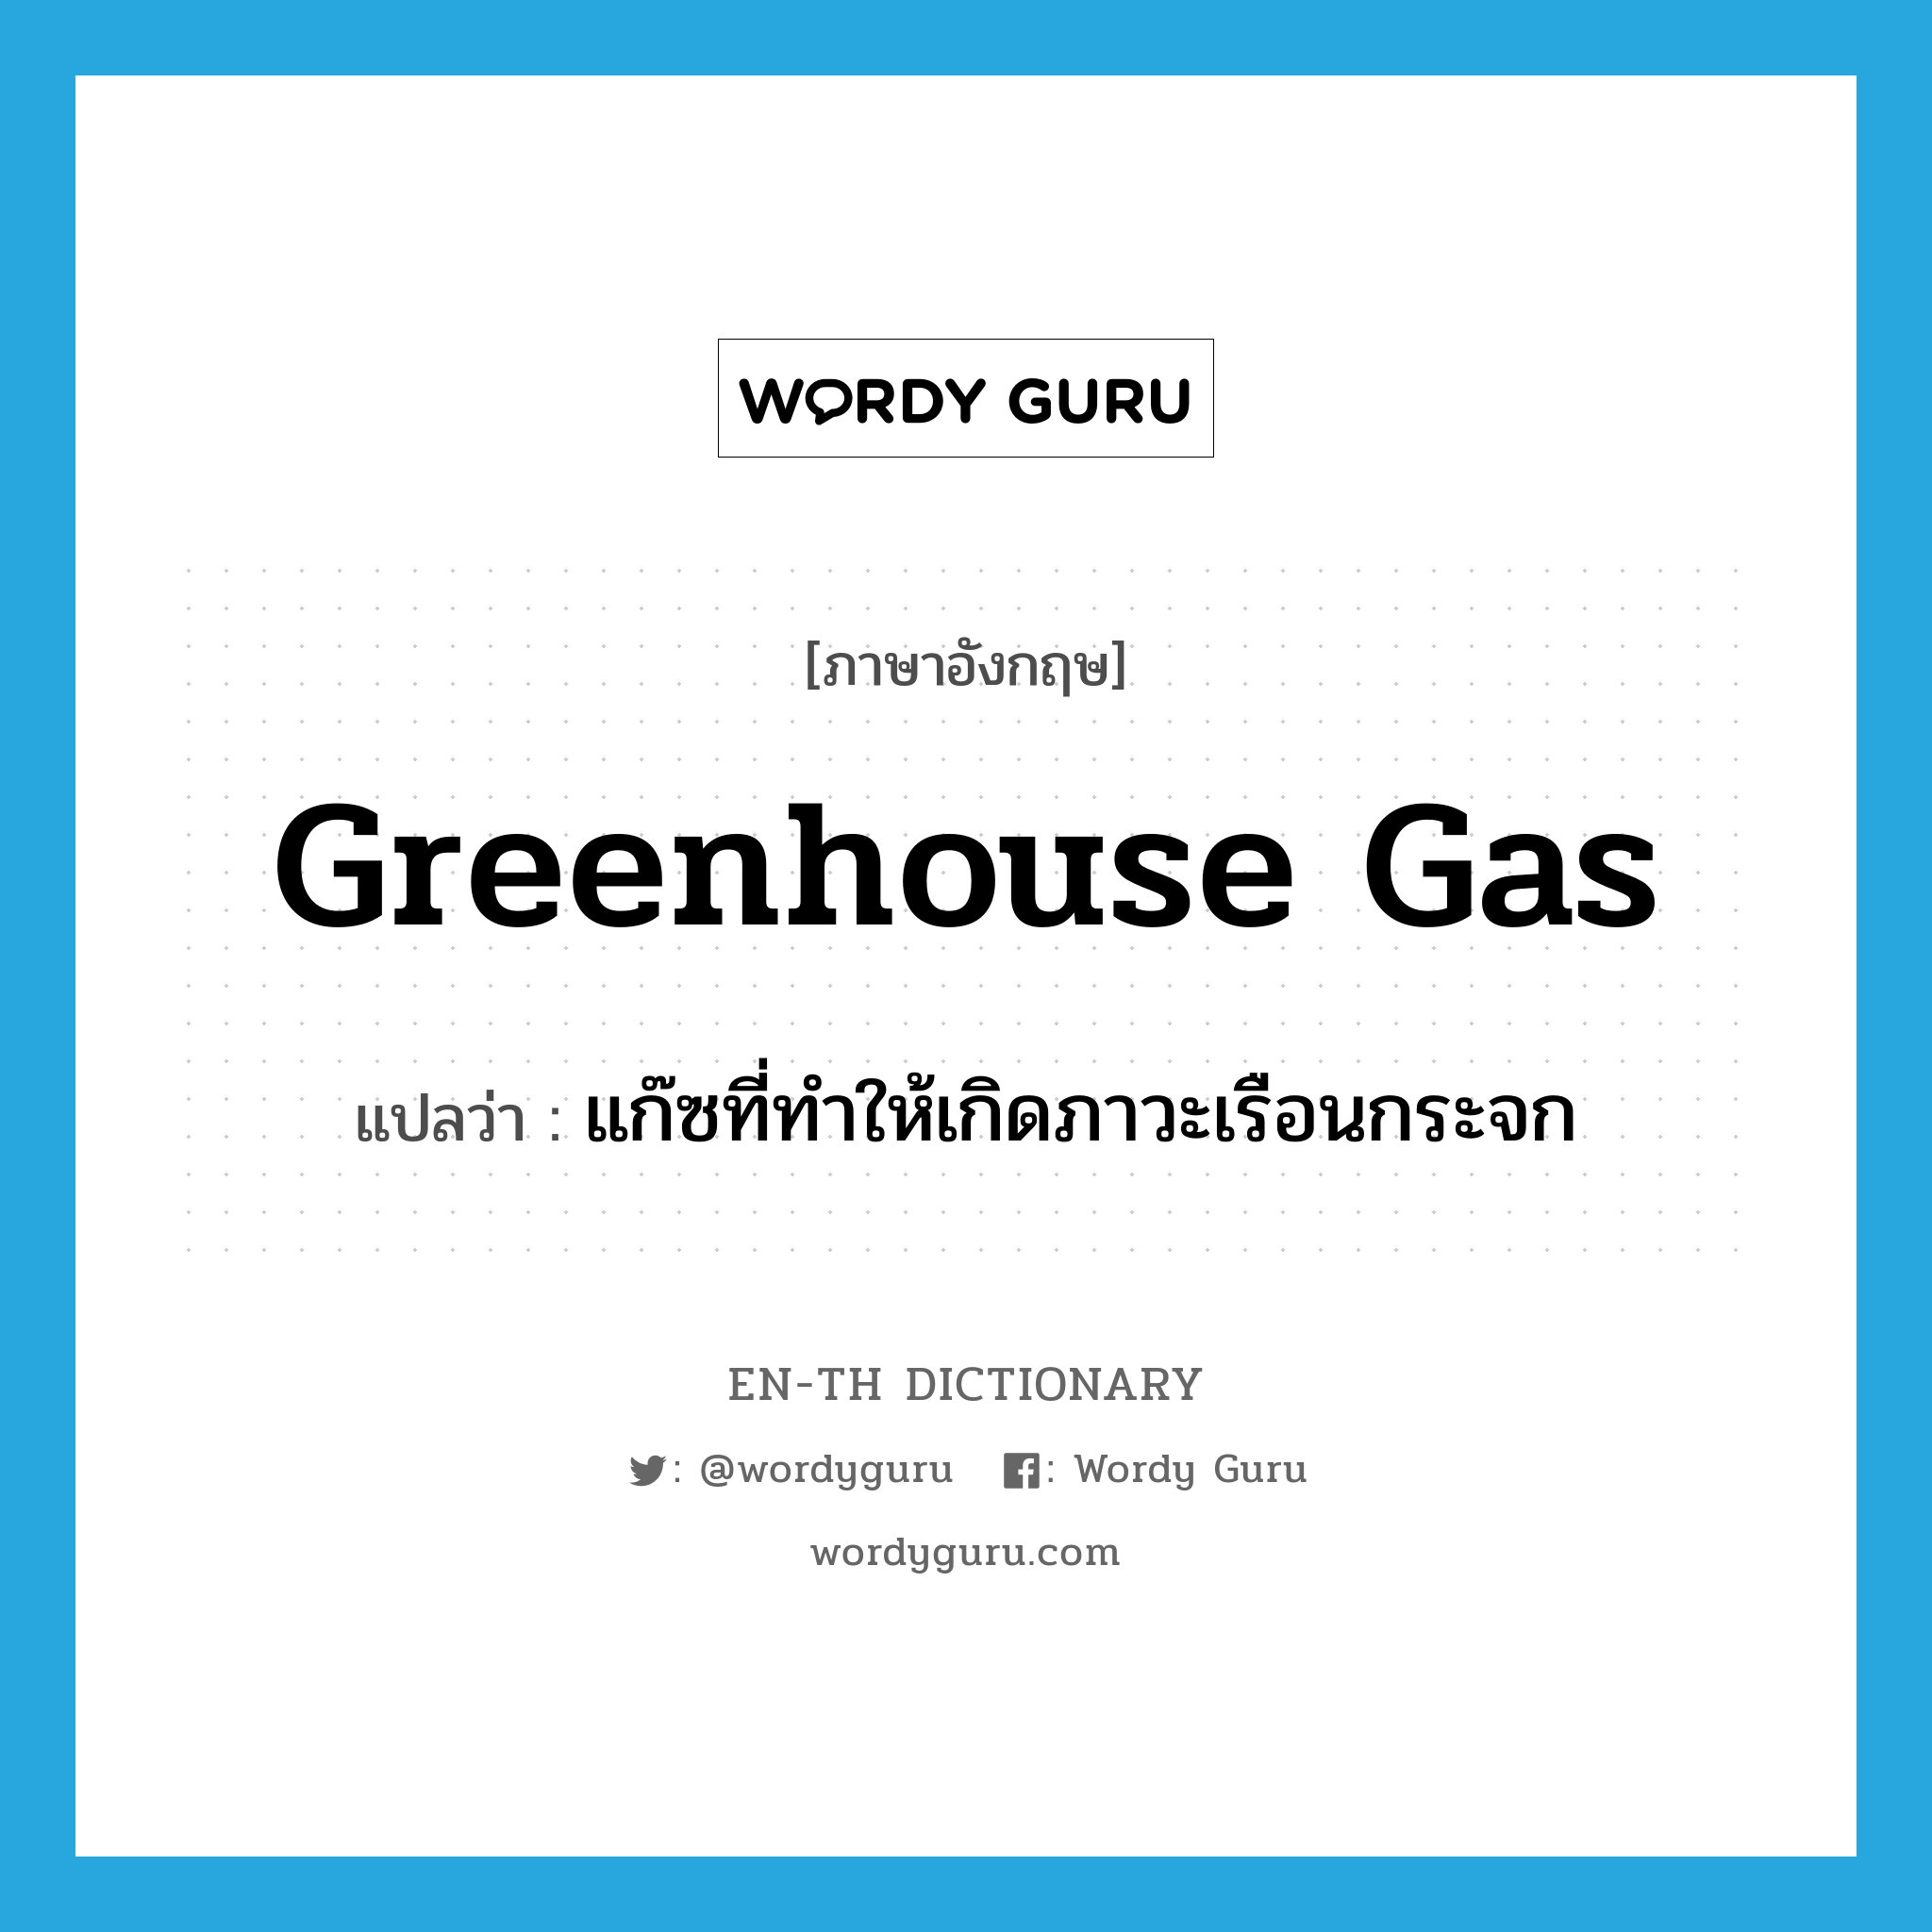 แก๊ซที่ทำให้เกิดภาวะเรือนกระจก ภาษาอังกฤษ?, คำศัพท์ภาษาอังกฤษ แก๊ซที่ทำให้เกิดภาวะเรือนกระจก แปลว่า greenhouse gas ประเภท N หมวด N